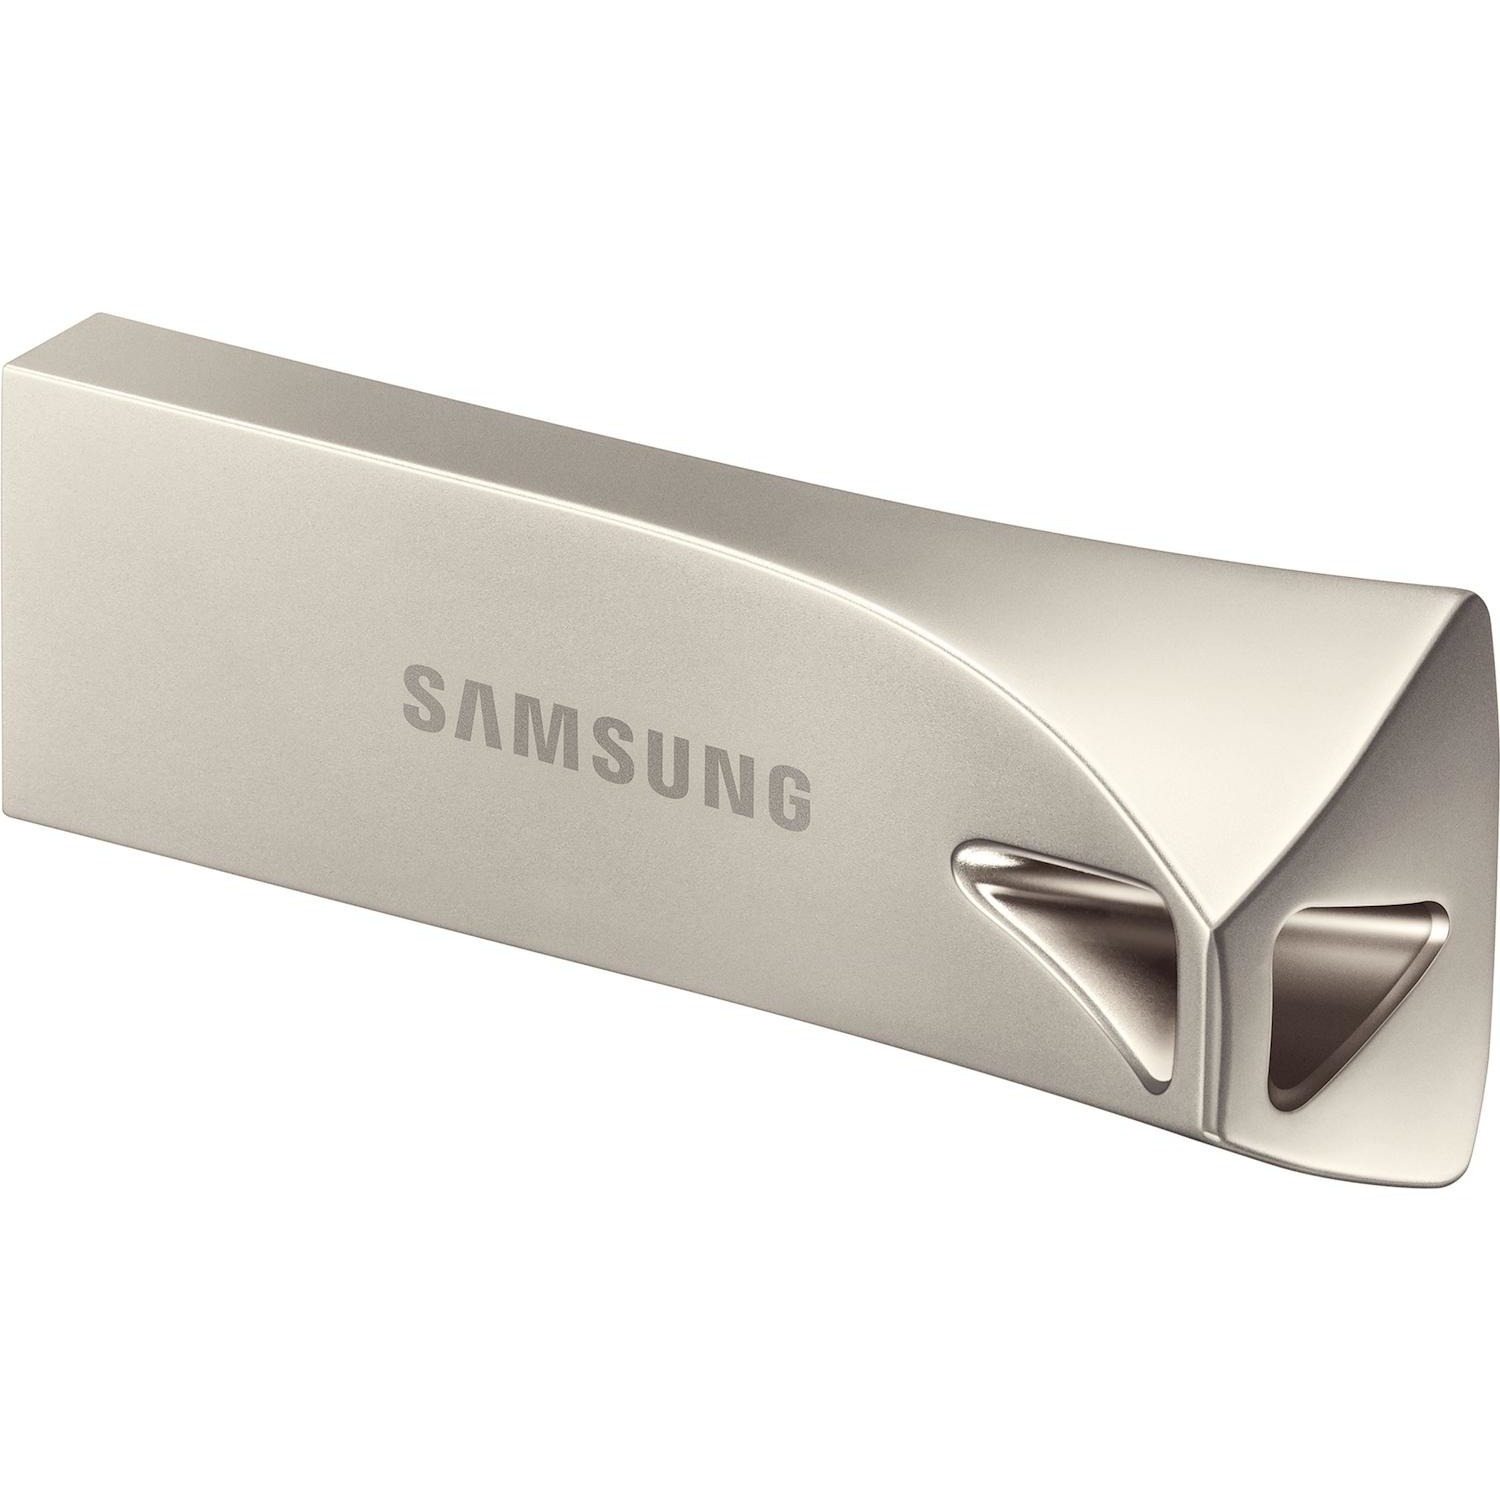 Immagine per Pen drive Samsung 256GB USB 3.1 champagne da DIMOStore